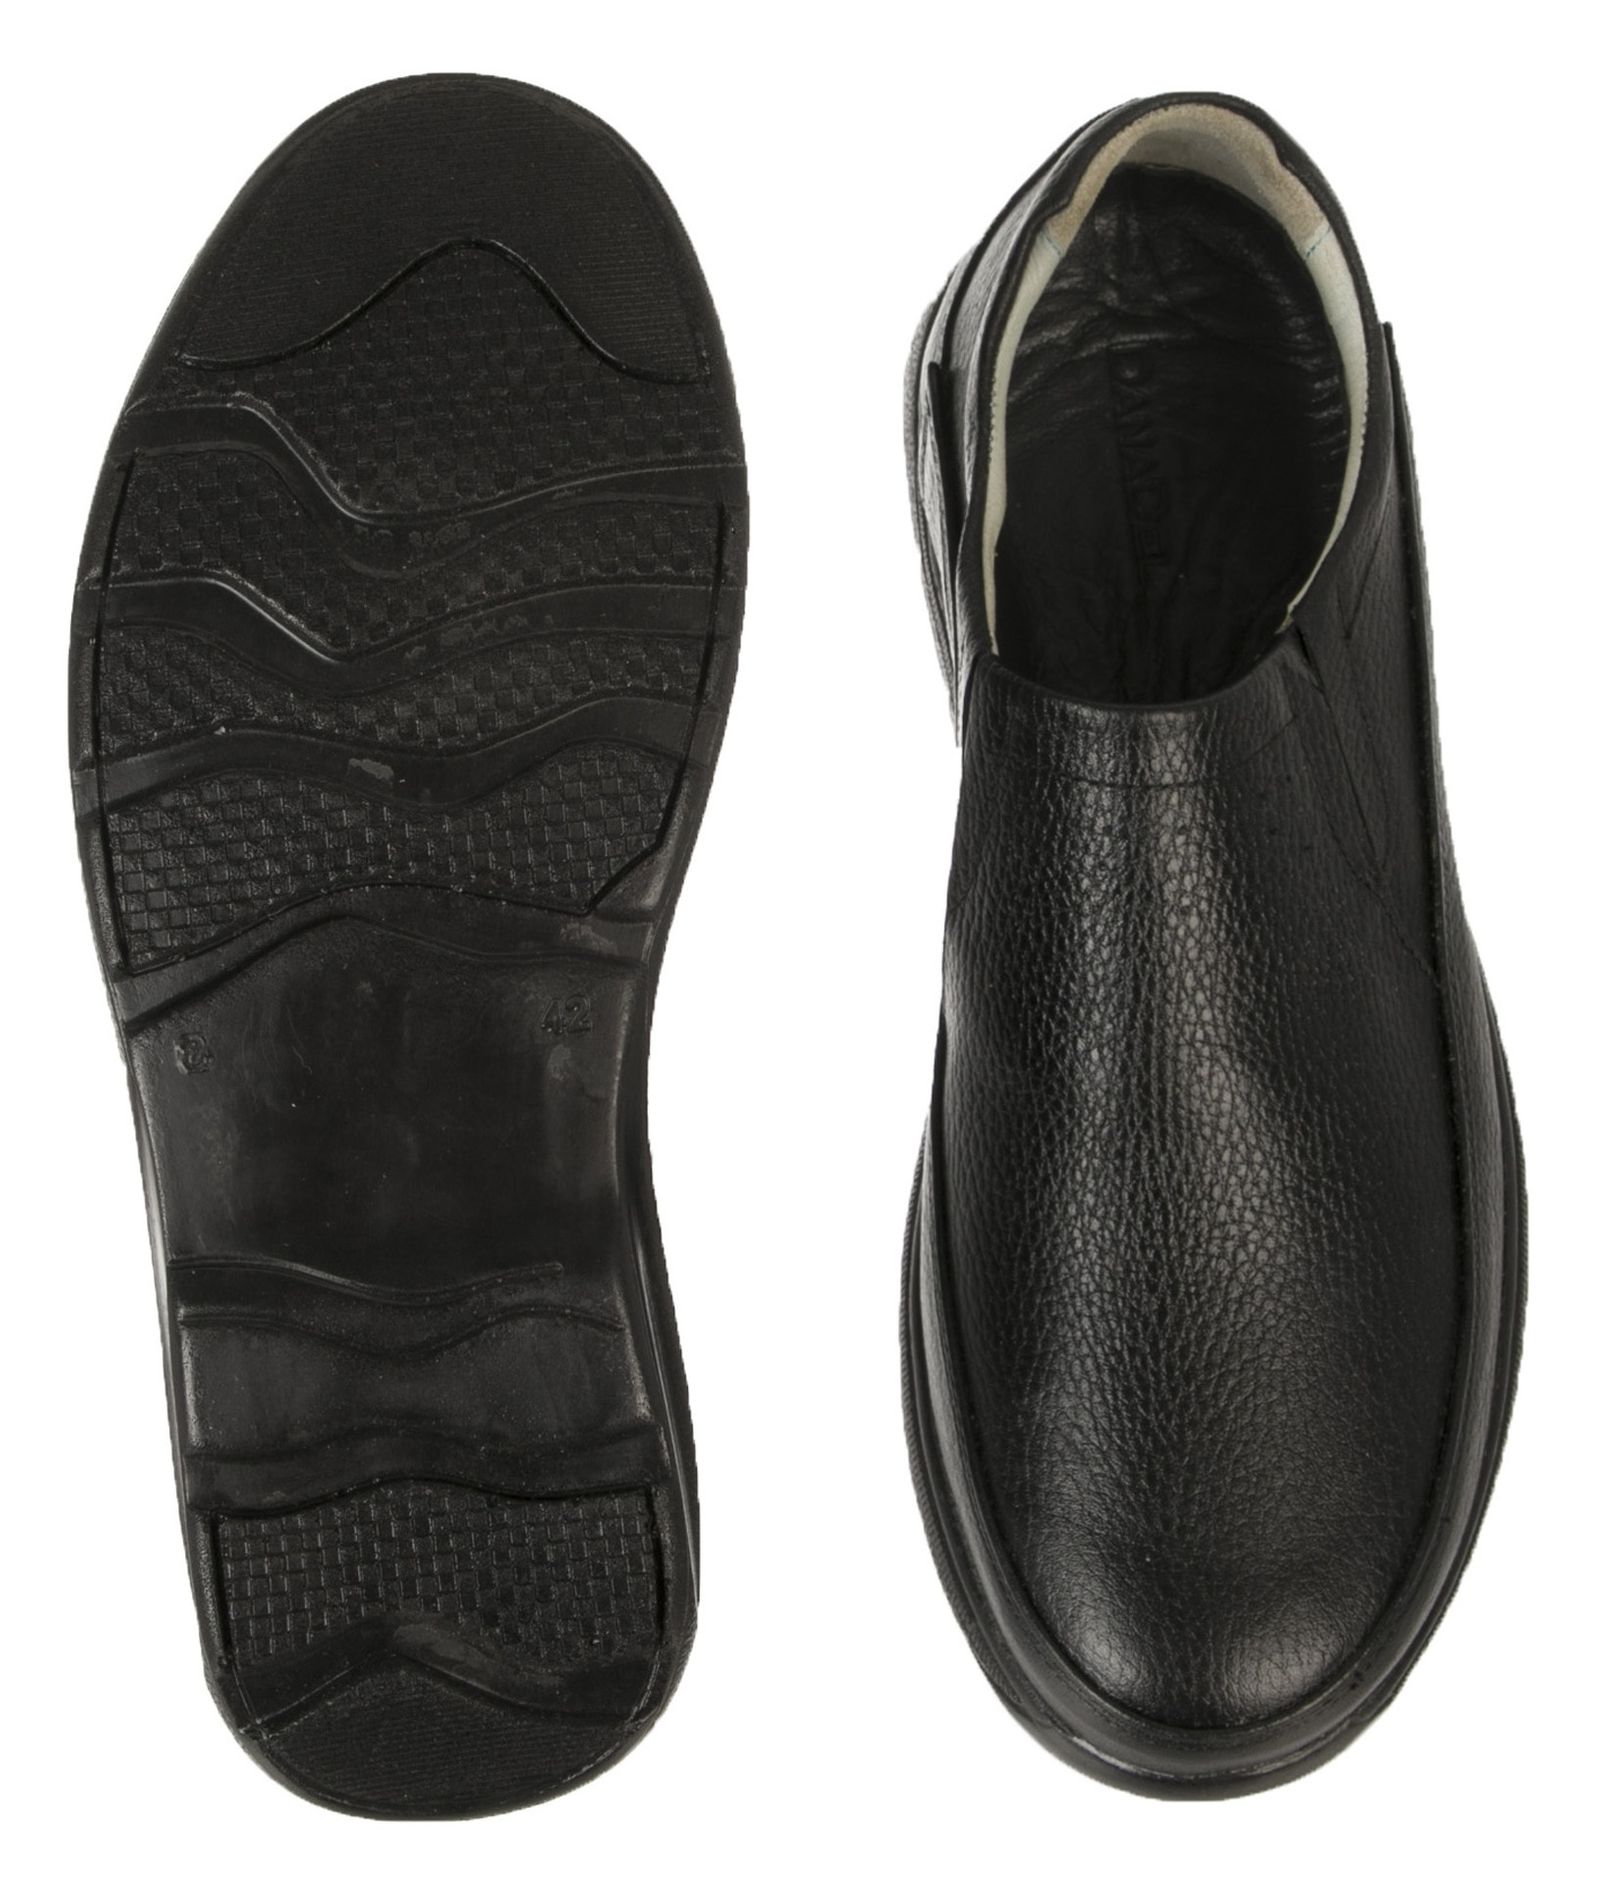 کفش روزمره مردانه دانادل مدل 7726A503101 - مشکی - 5